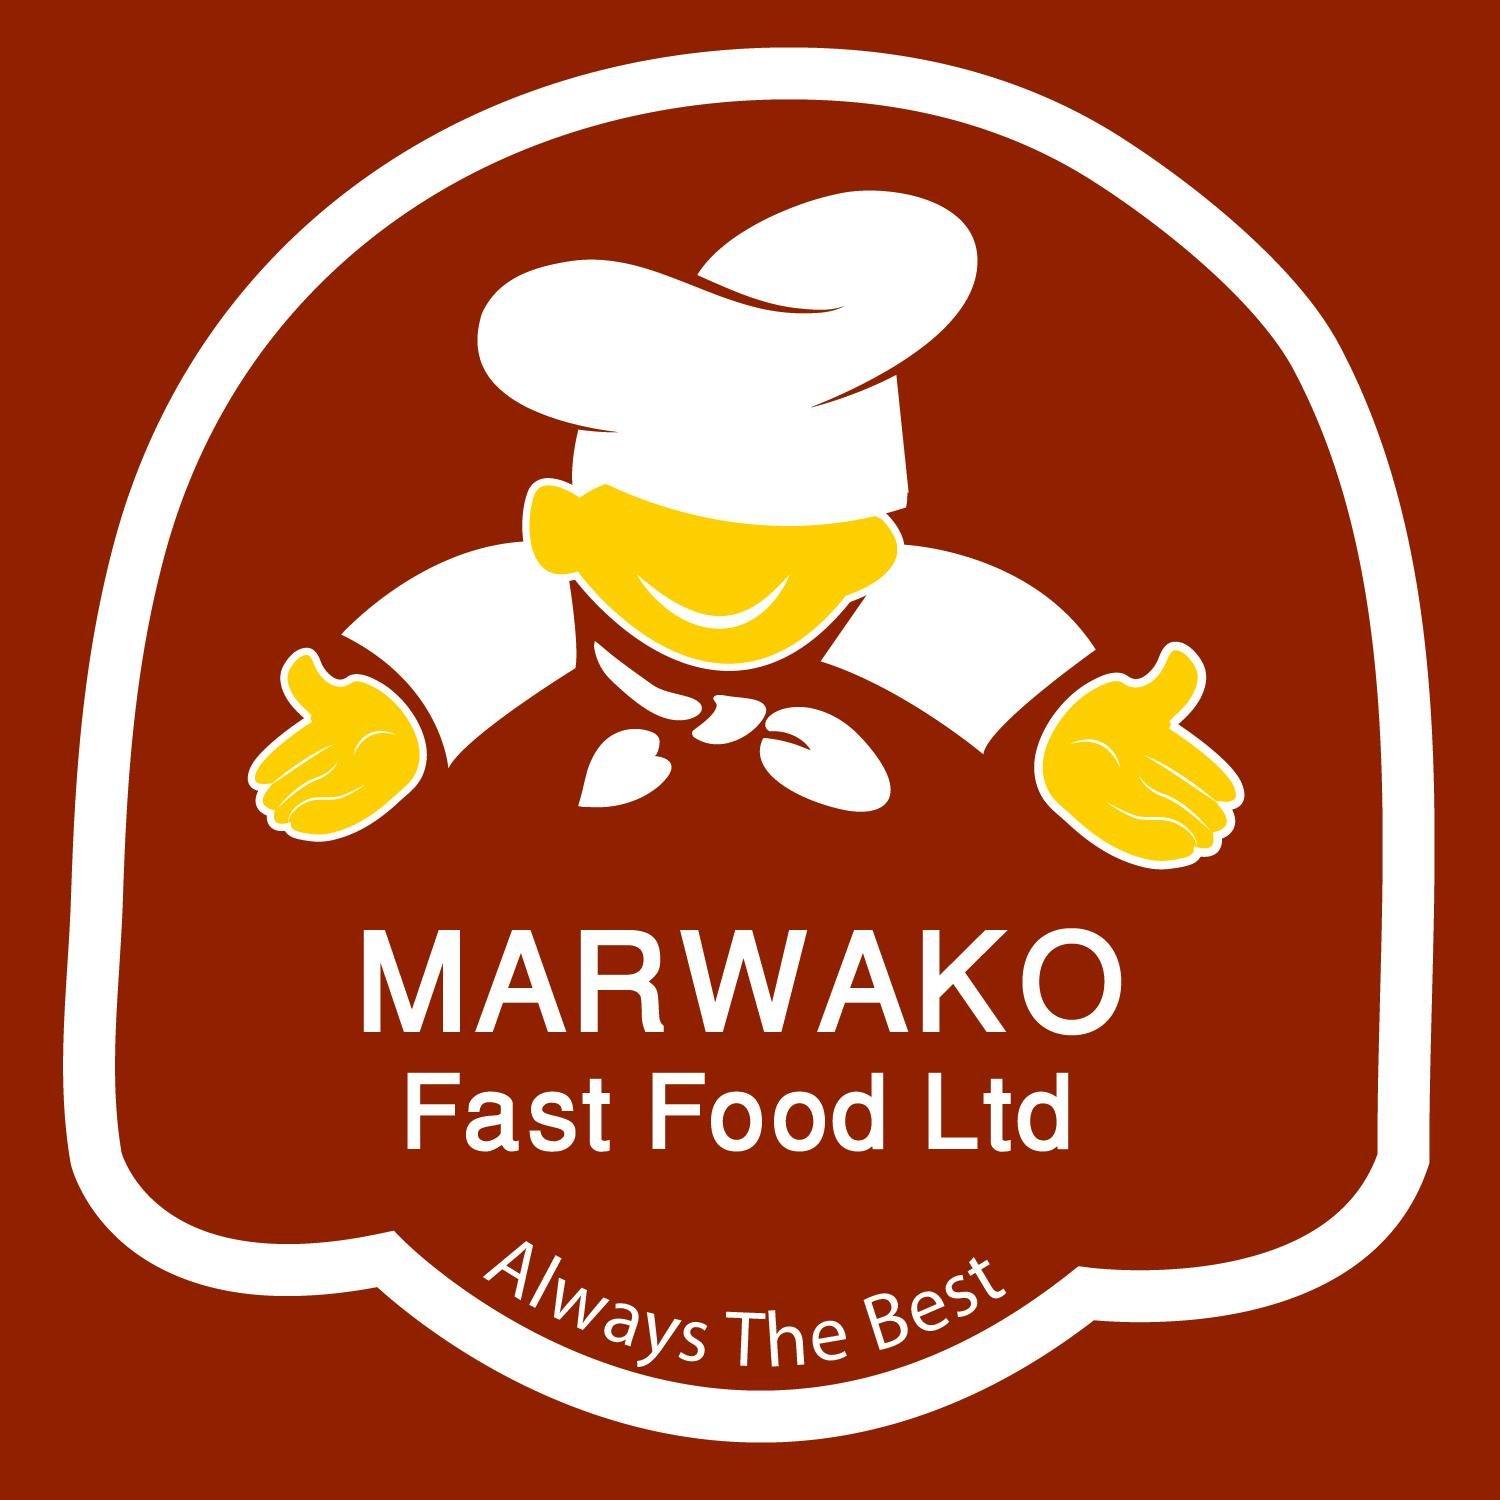 Marwako